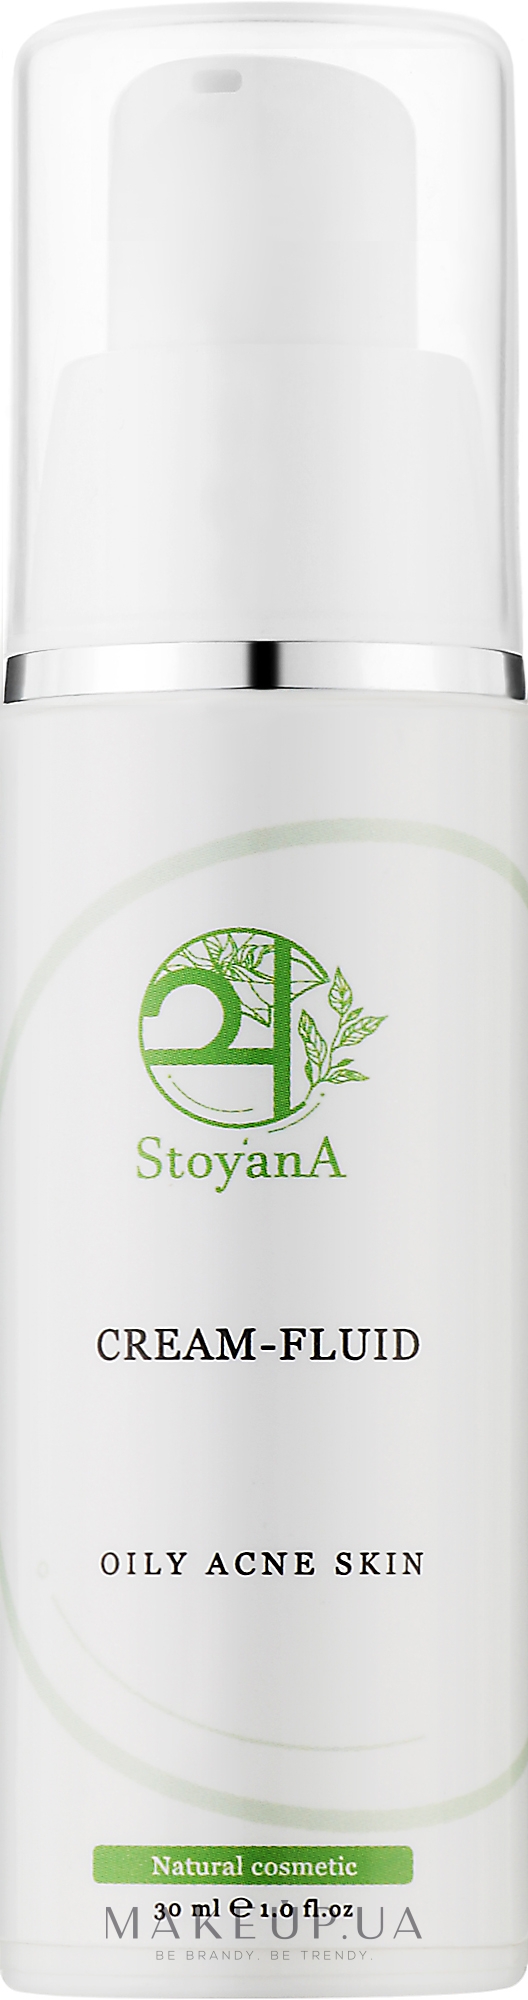 Крем-флюид с активом BixActiv для лица - StoyanA Cream-Fluid Oily Acne Skin — фото 30ml